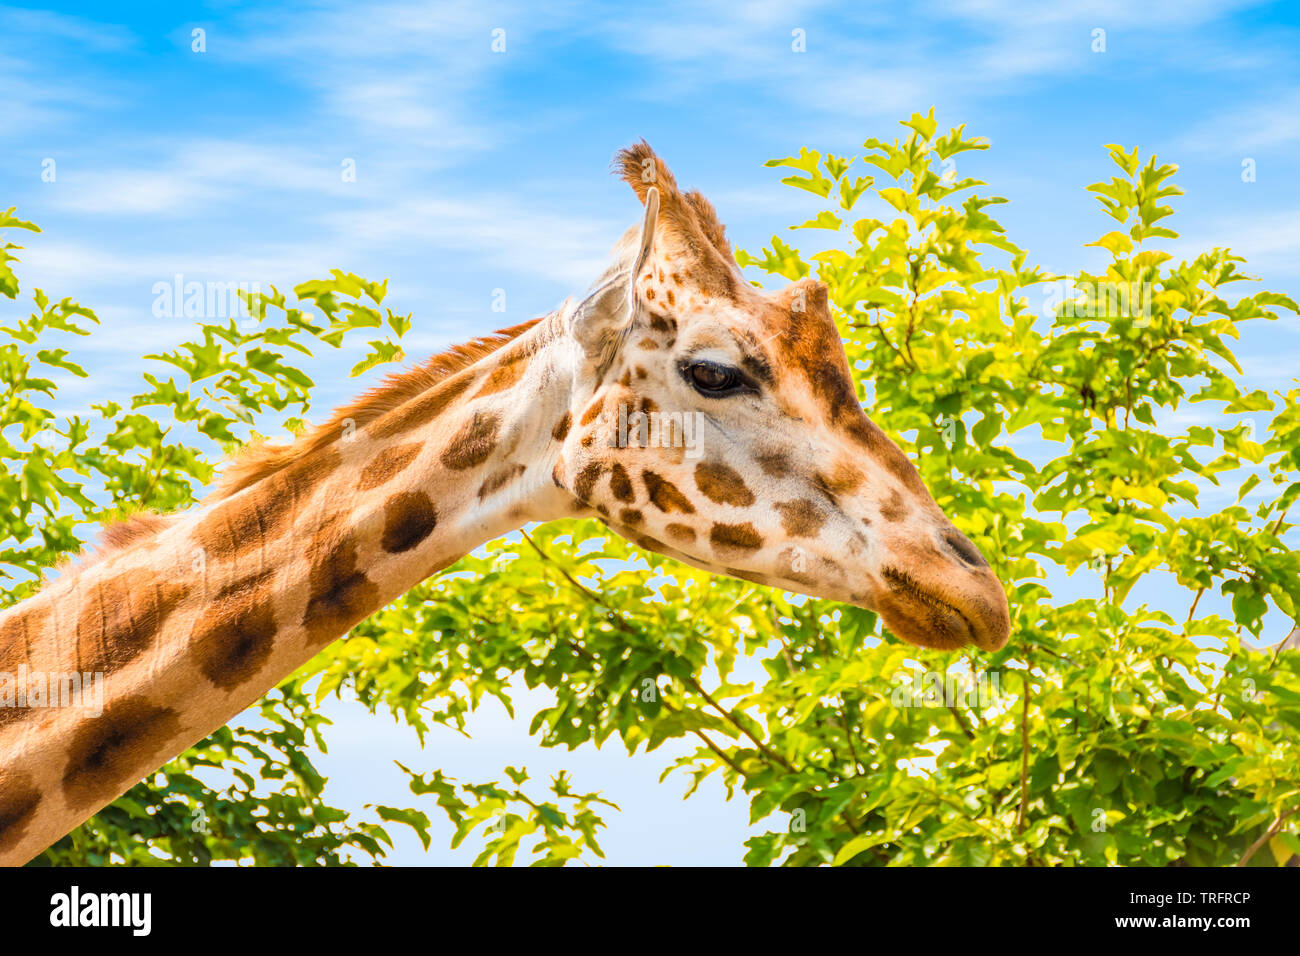 Vue latérale de la tête de girafe. Ciel bleu et arbre arrière-plan. Banque D'Images